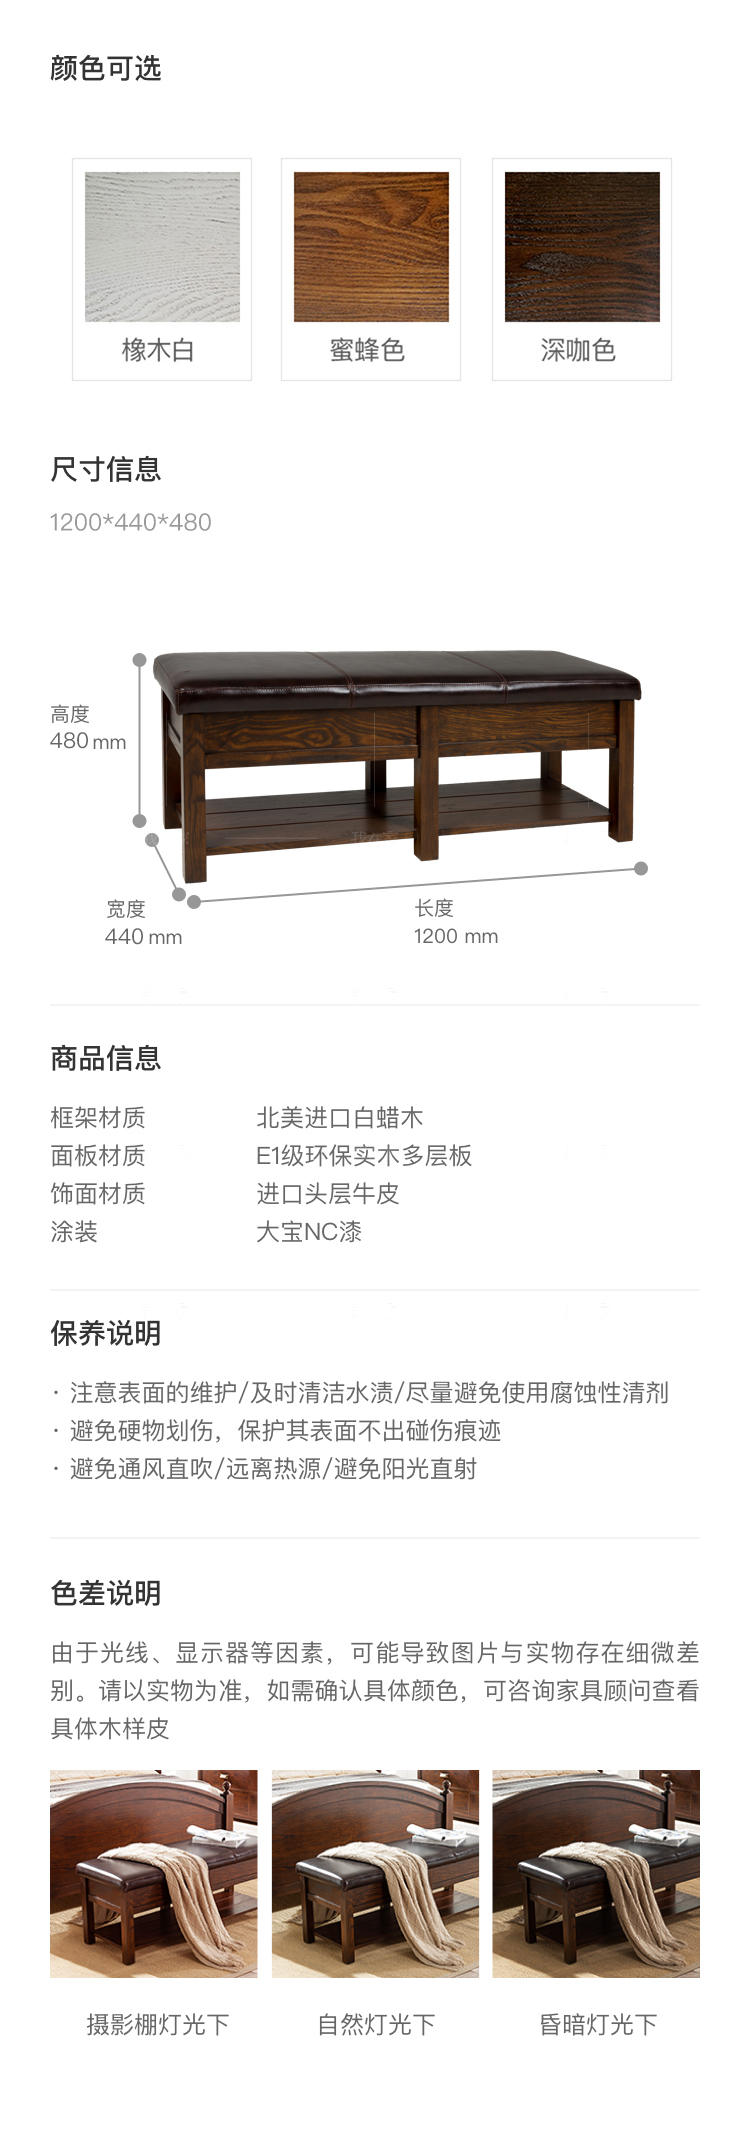 简约美式风格福克斯长条凳的家具详细介绍